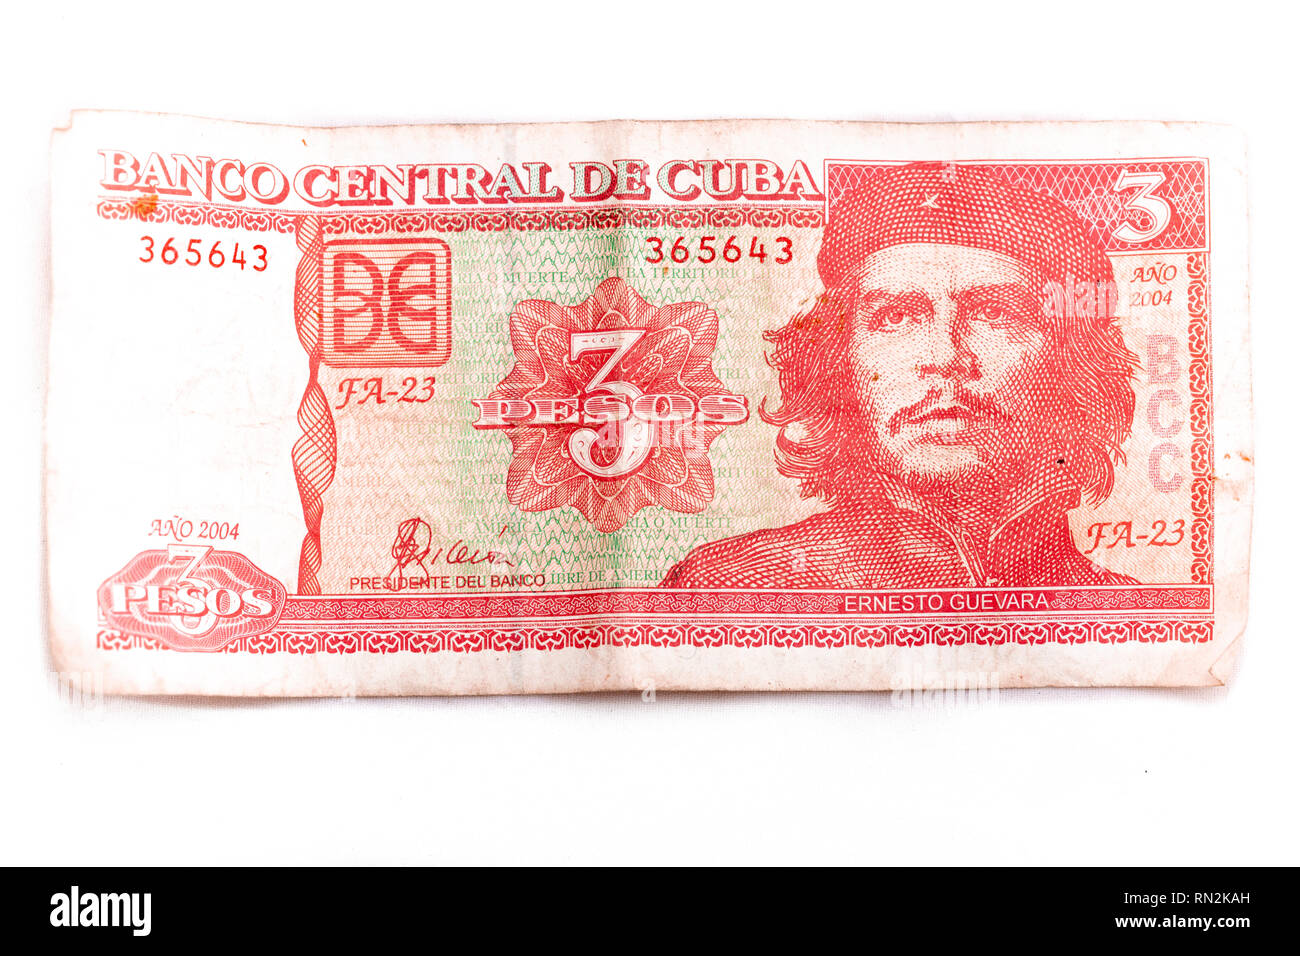 L'image avant d'un billet de 3 pesos cubains à l'image de Che Guevara sur fond blanc Banque D'Images